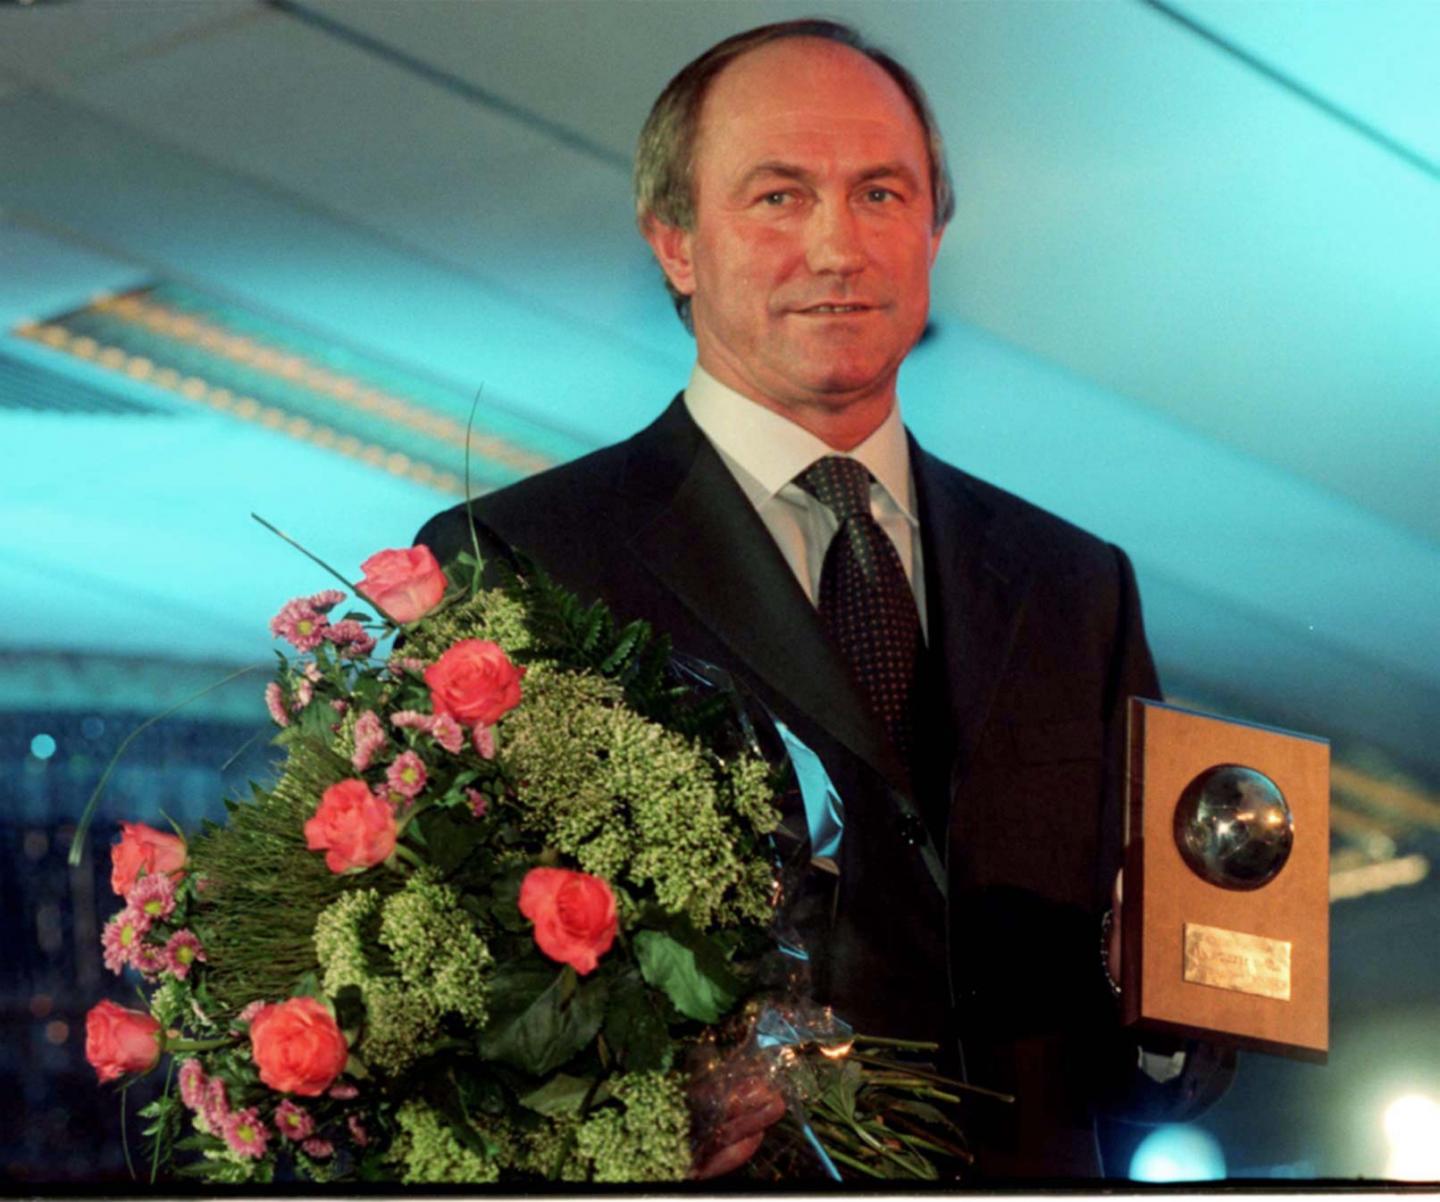 Franciszek Smuda z nagrodą "trenera roku" w plebiscycie tygodnika "Piłka Nożna" w 1999 roku.